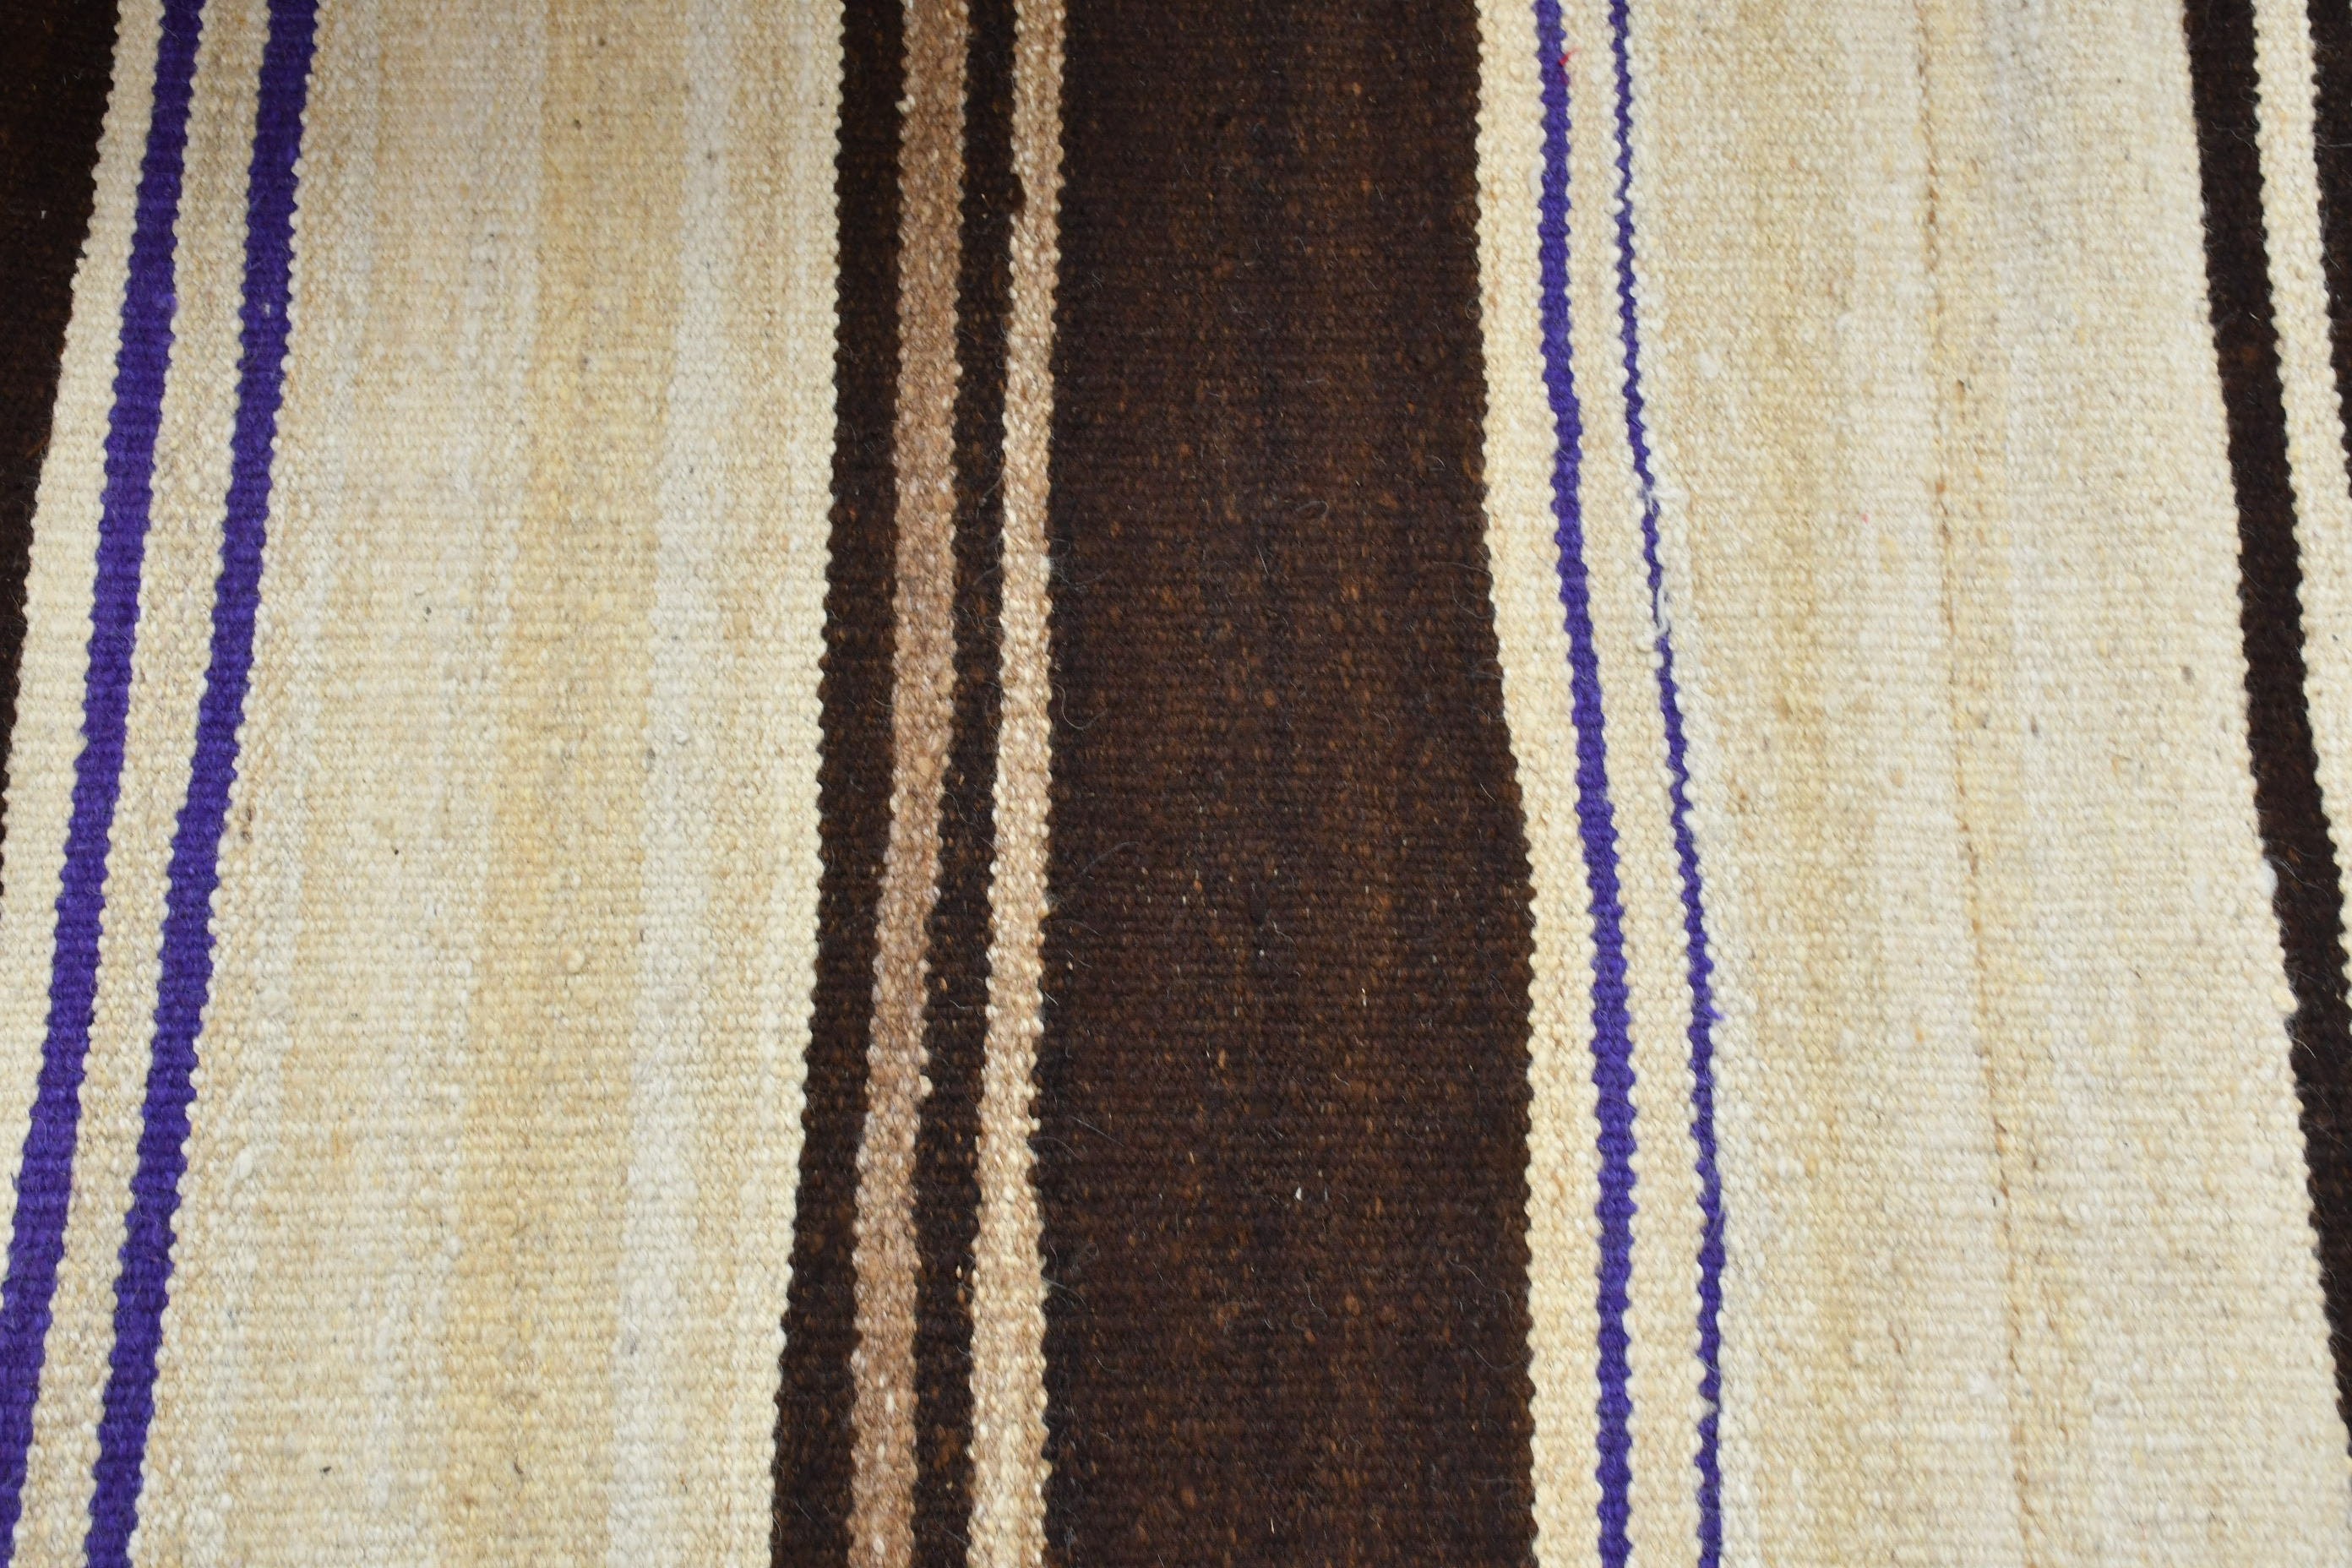 Wool Rugs, Vintage Rugs, Kitchen Rug, Ethnic Rug, Turkish Rugs, Rugs for Corridor, Colorful Rugs, Hallway Rug, 2.7x10.2 ft Runner Rug